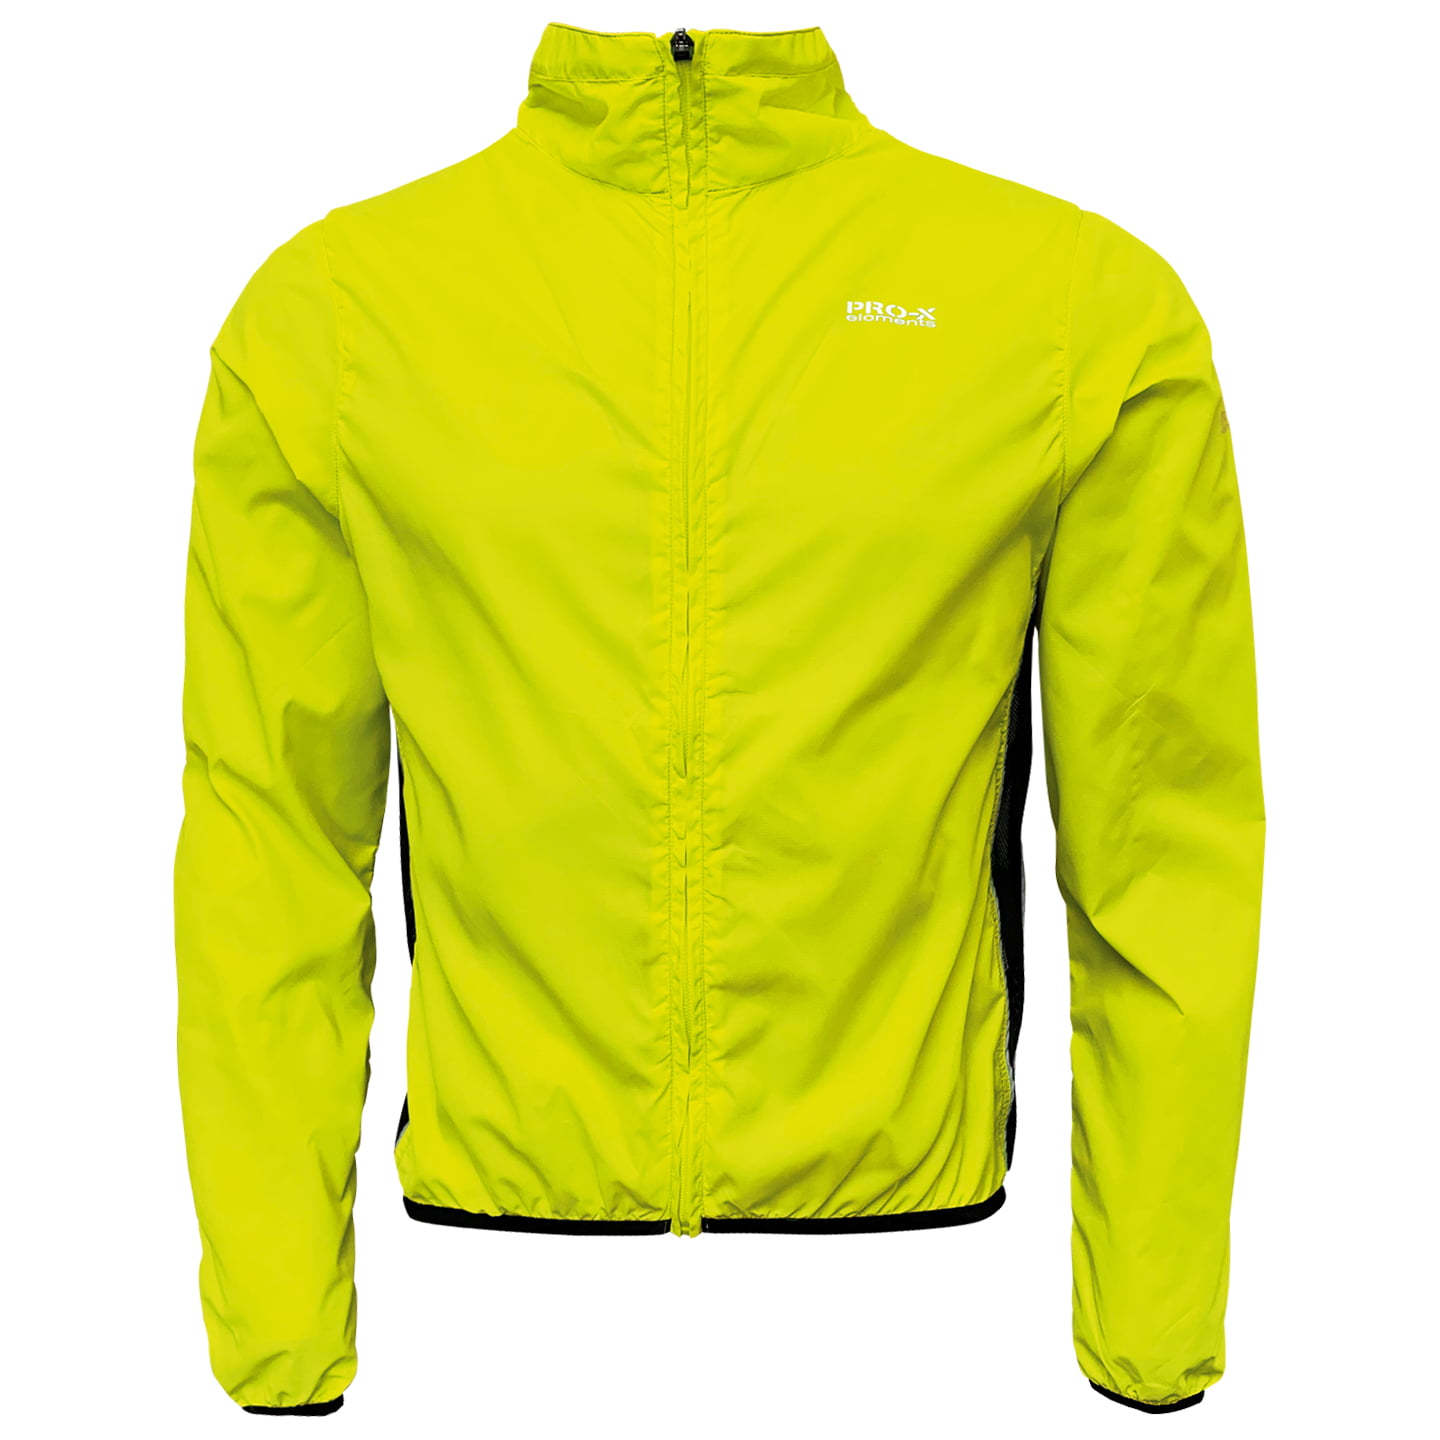 PRO-X Wind Jacket, for men, size M, Bike jacket, Cycling clothing